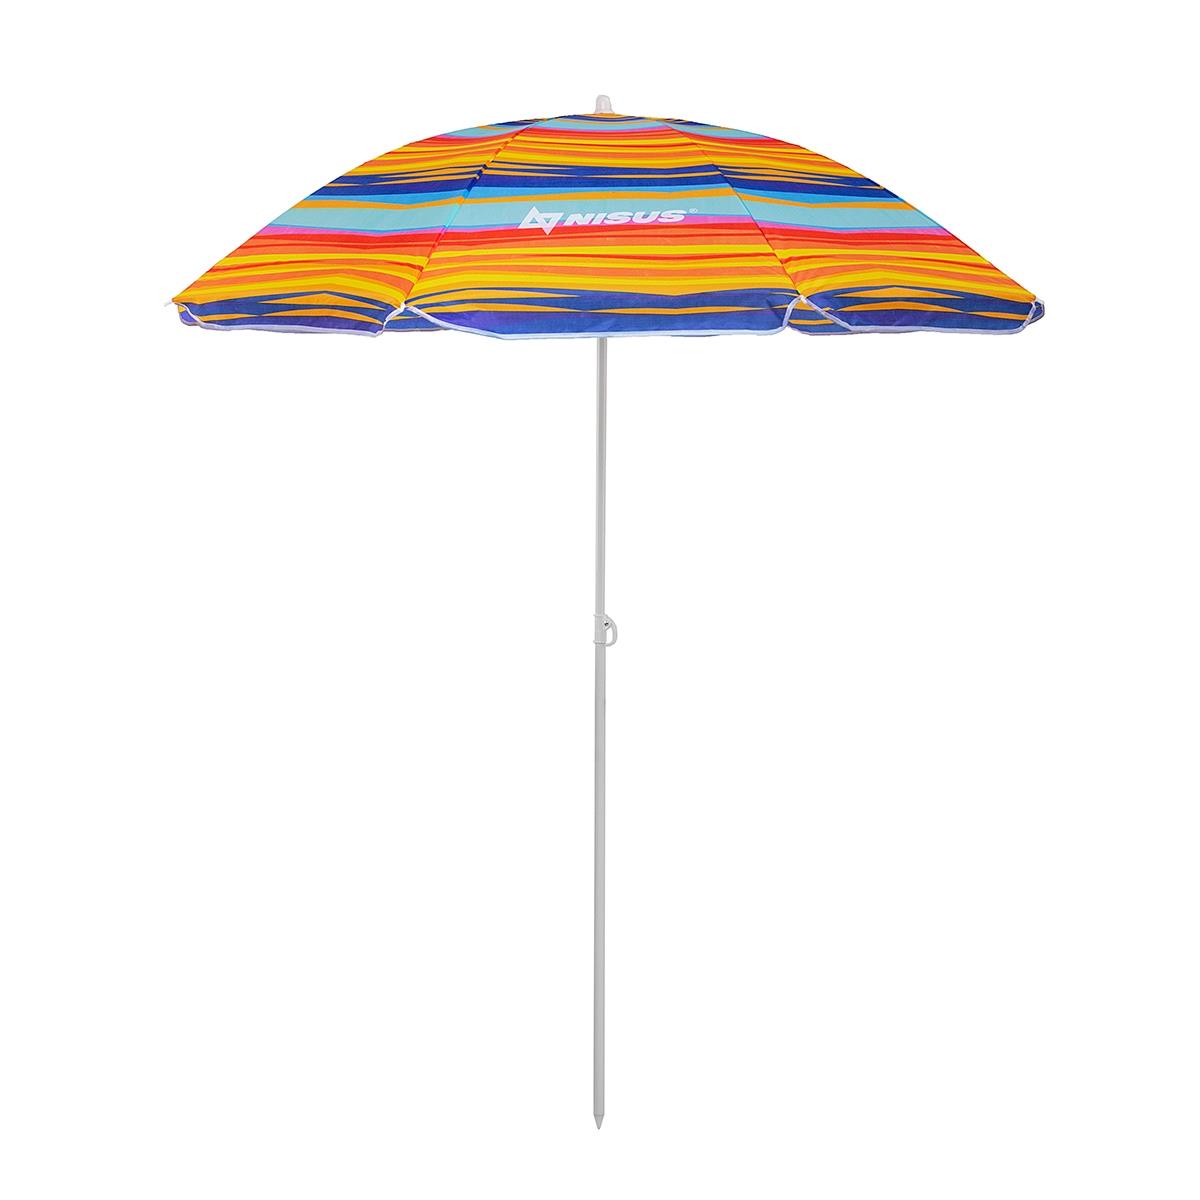 Зонт пляжный d 2,00м прямой (22/25/170Т) NA-200-SO  Nisus зонт пляжный d 2 00м с наклоном голубой 22 25 170т na 200n b nisus